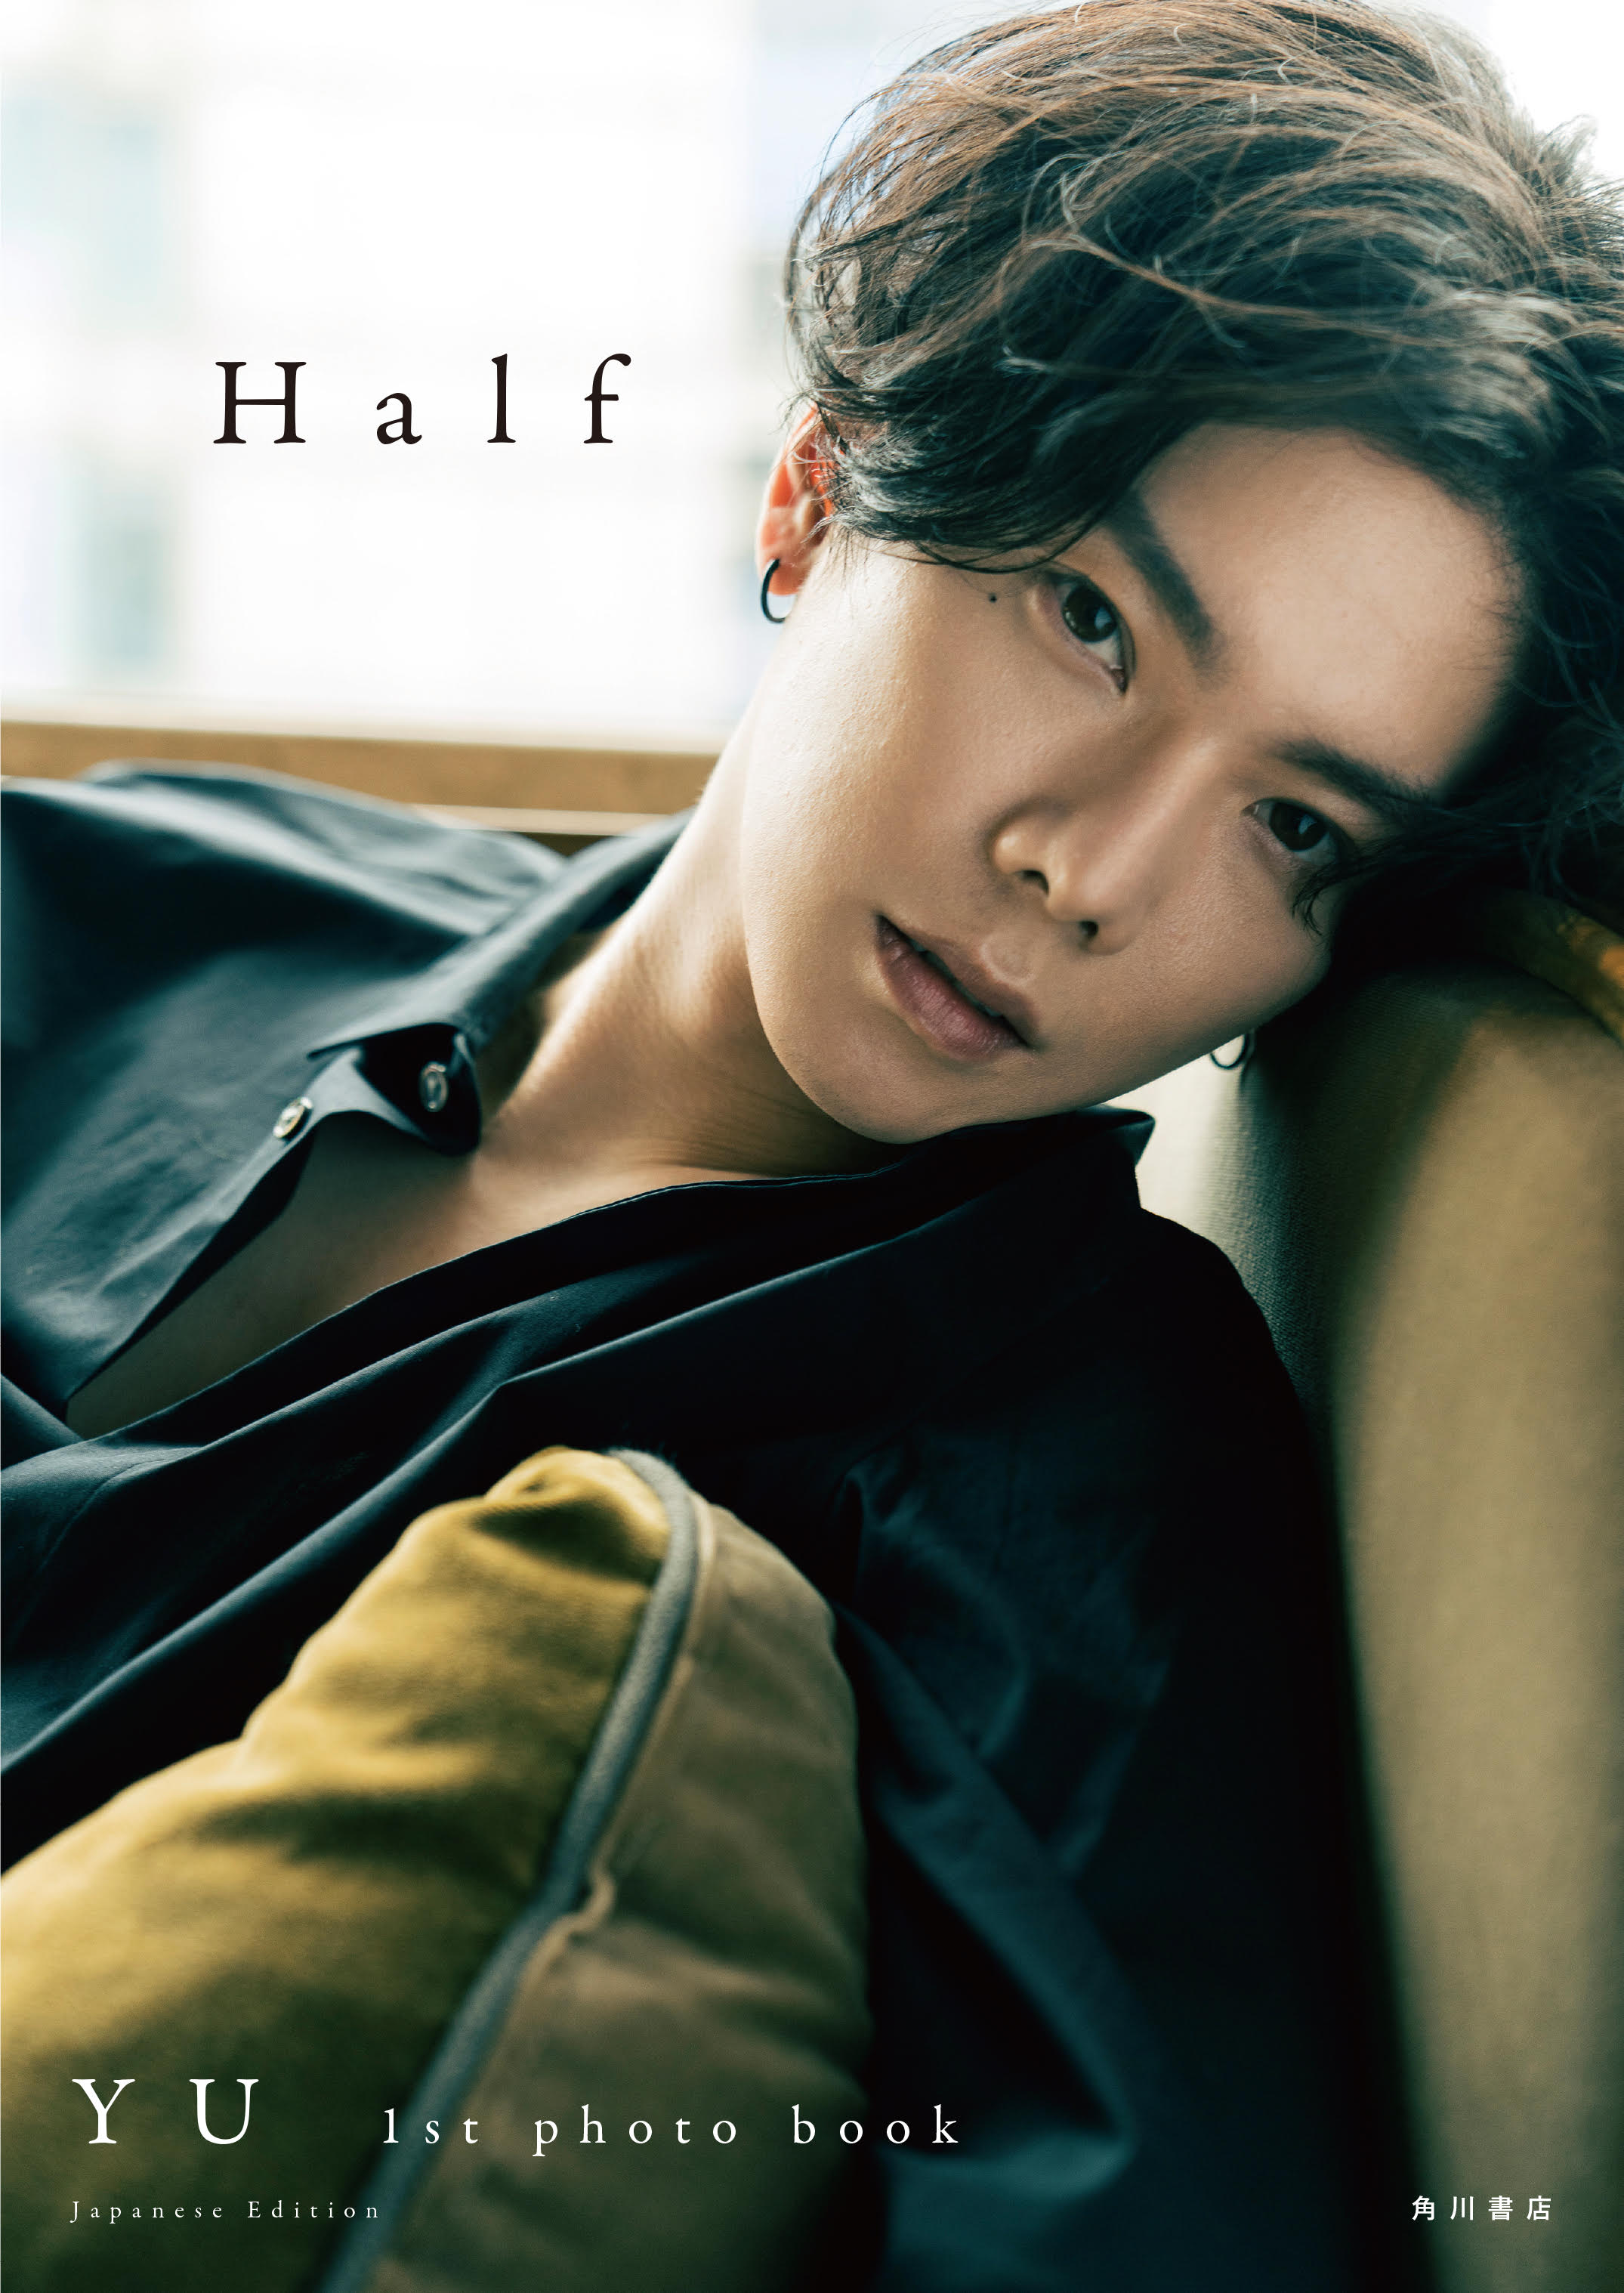 日本語版》楊宇騰YU 1st写真集『Half YU 1st photo book』【公式